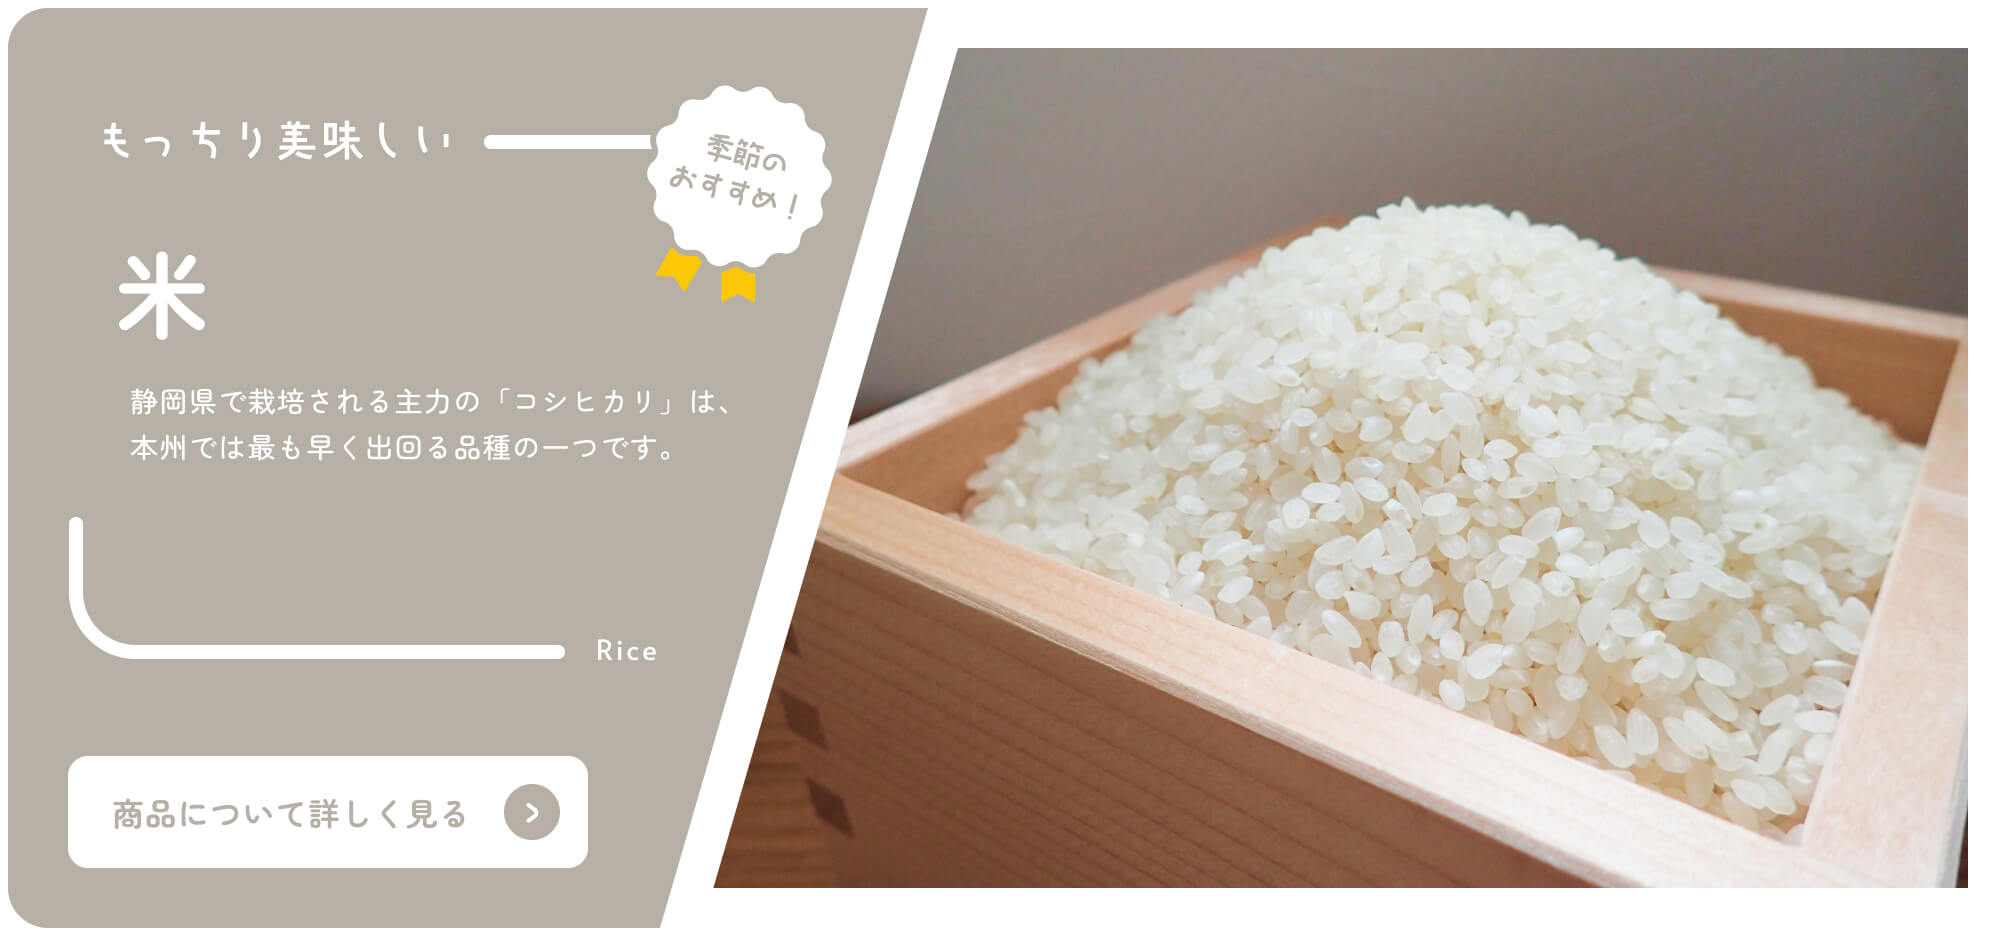 바이 시즈오카 온라인 카탈로그 제철 추천 쌀